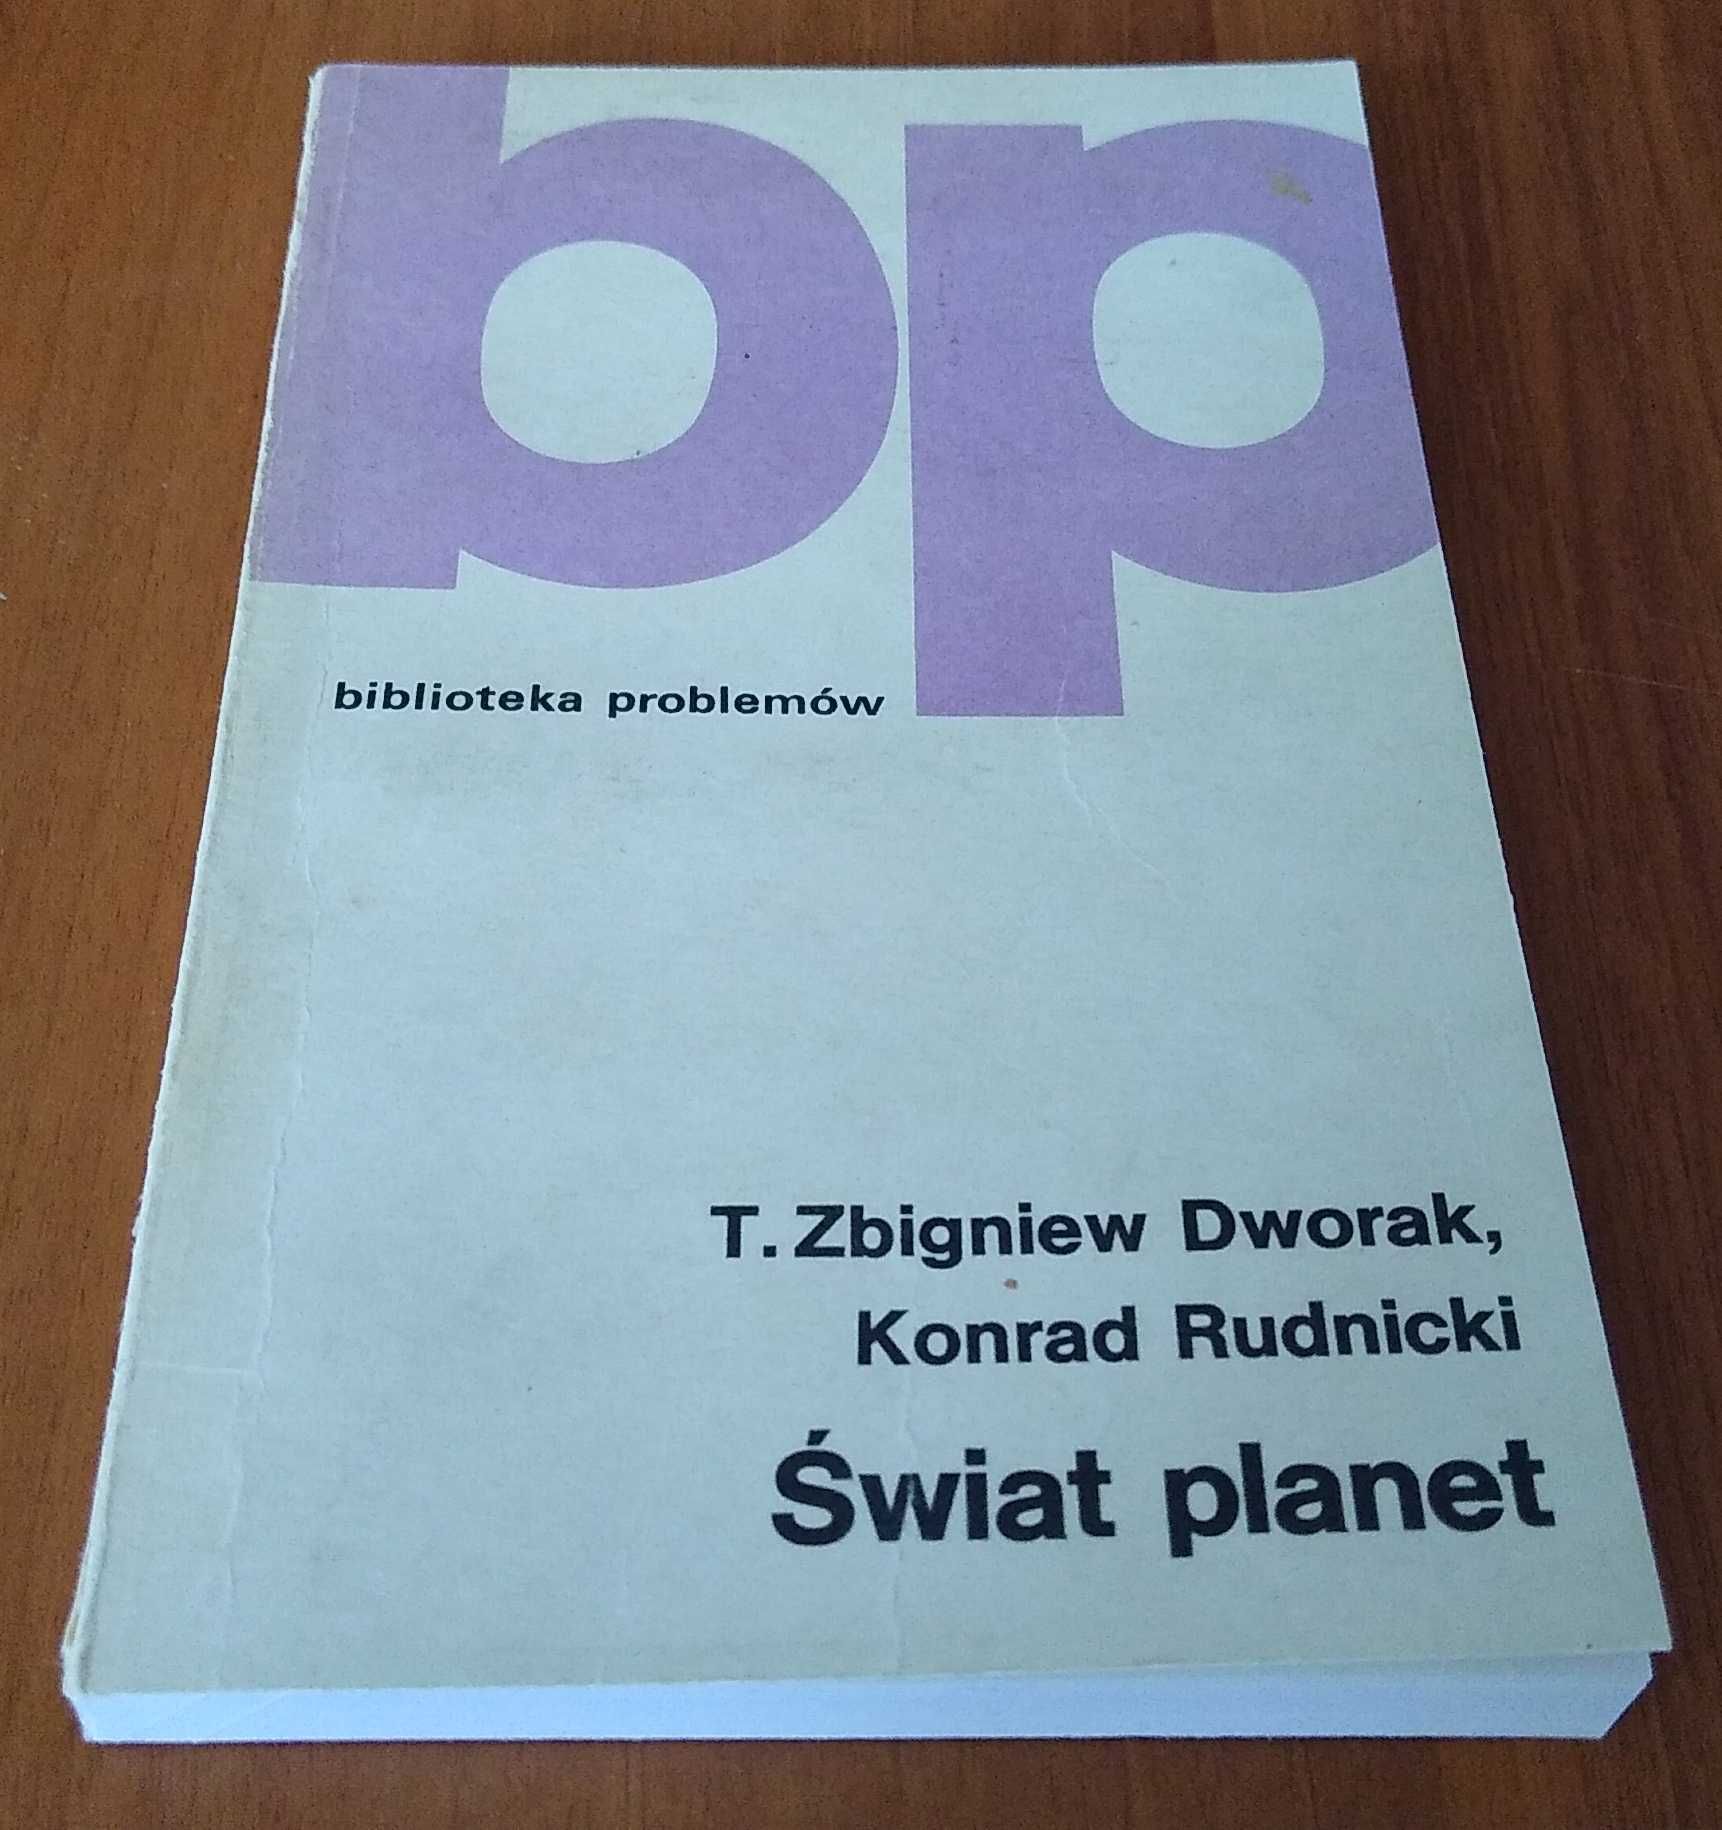 Świat planet / T. Zbigniew Dworak, Konrad Rudnicki.